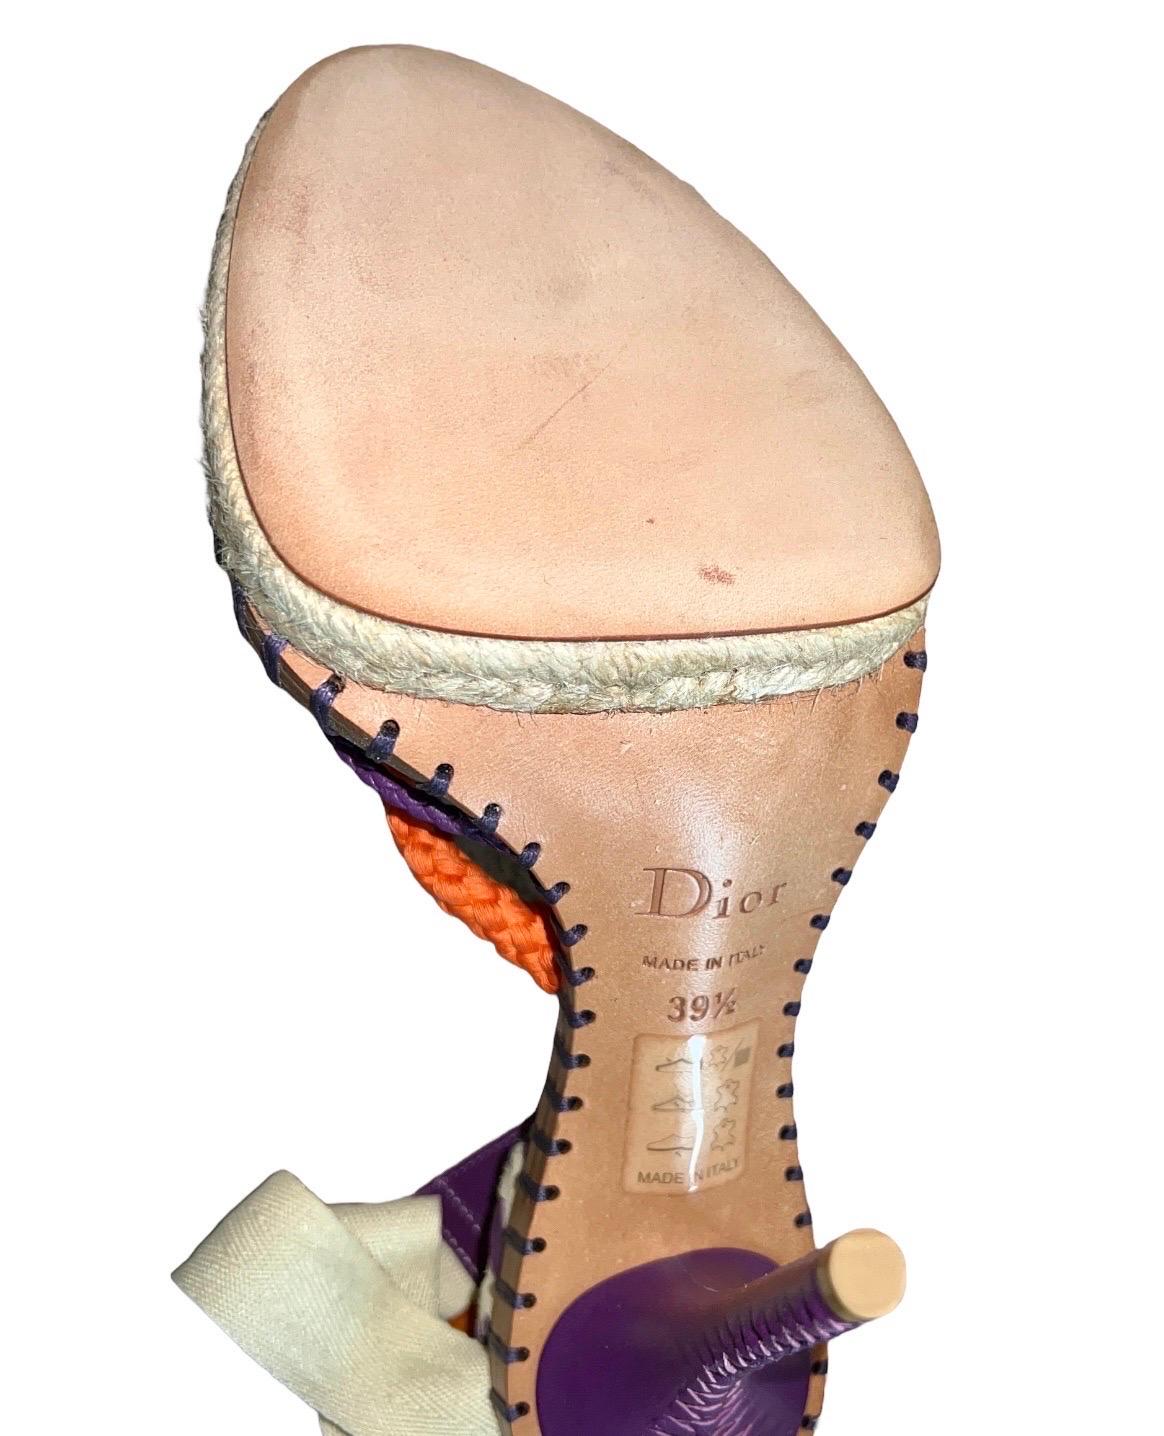 UNIQUE Unworn Christian Dior John Galliano Exotic Show Runway High Heel Sandals 1